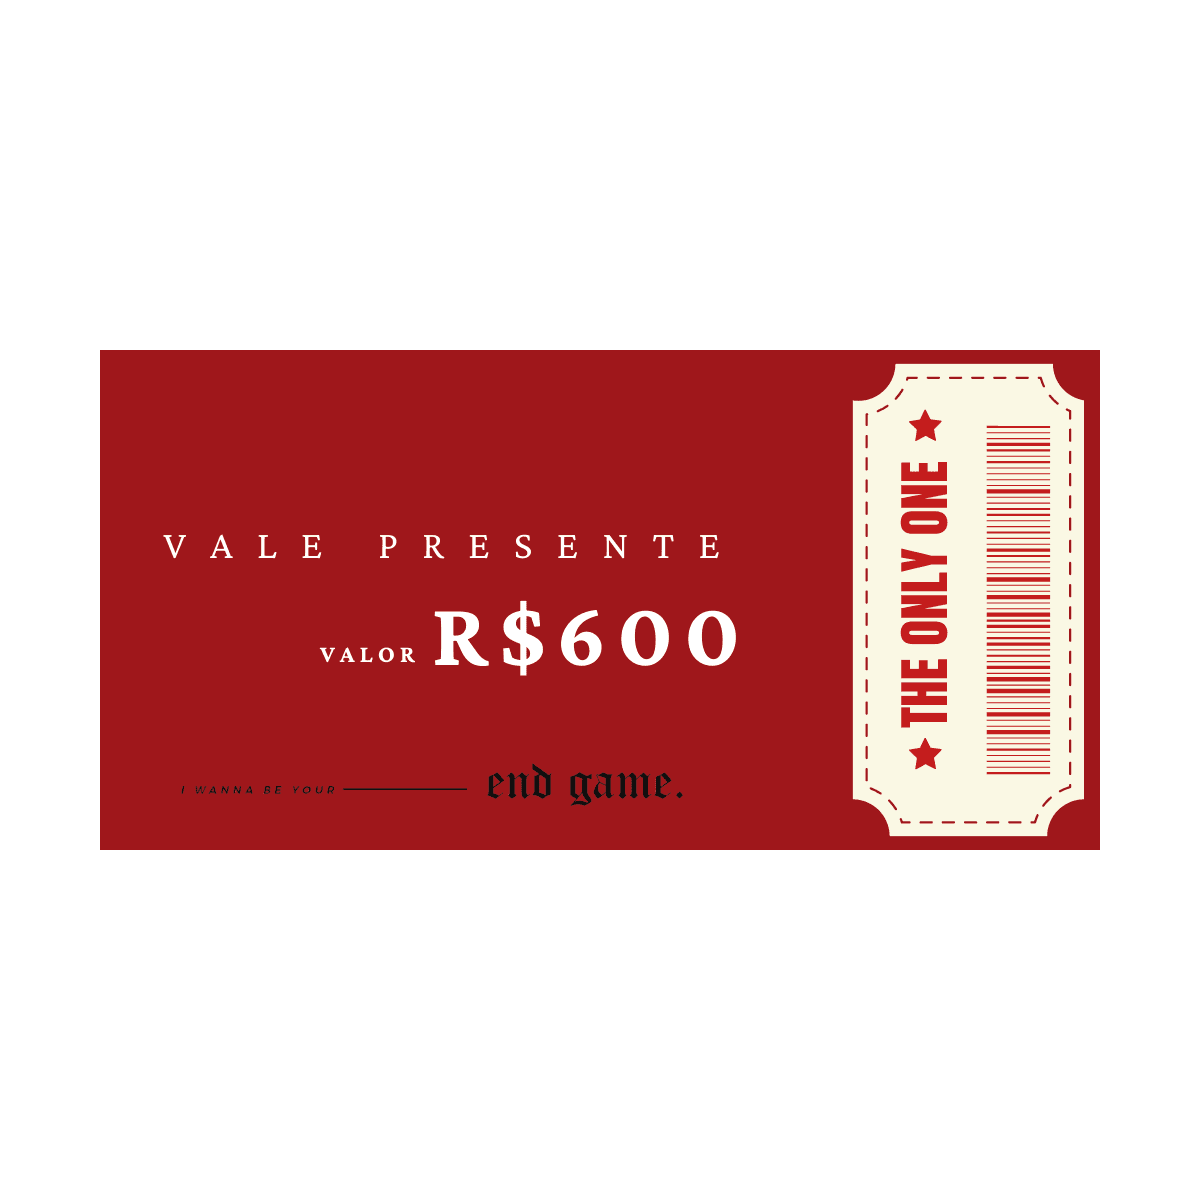 VALE PRESENTE R$600 - MONOÁ